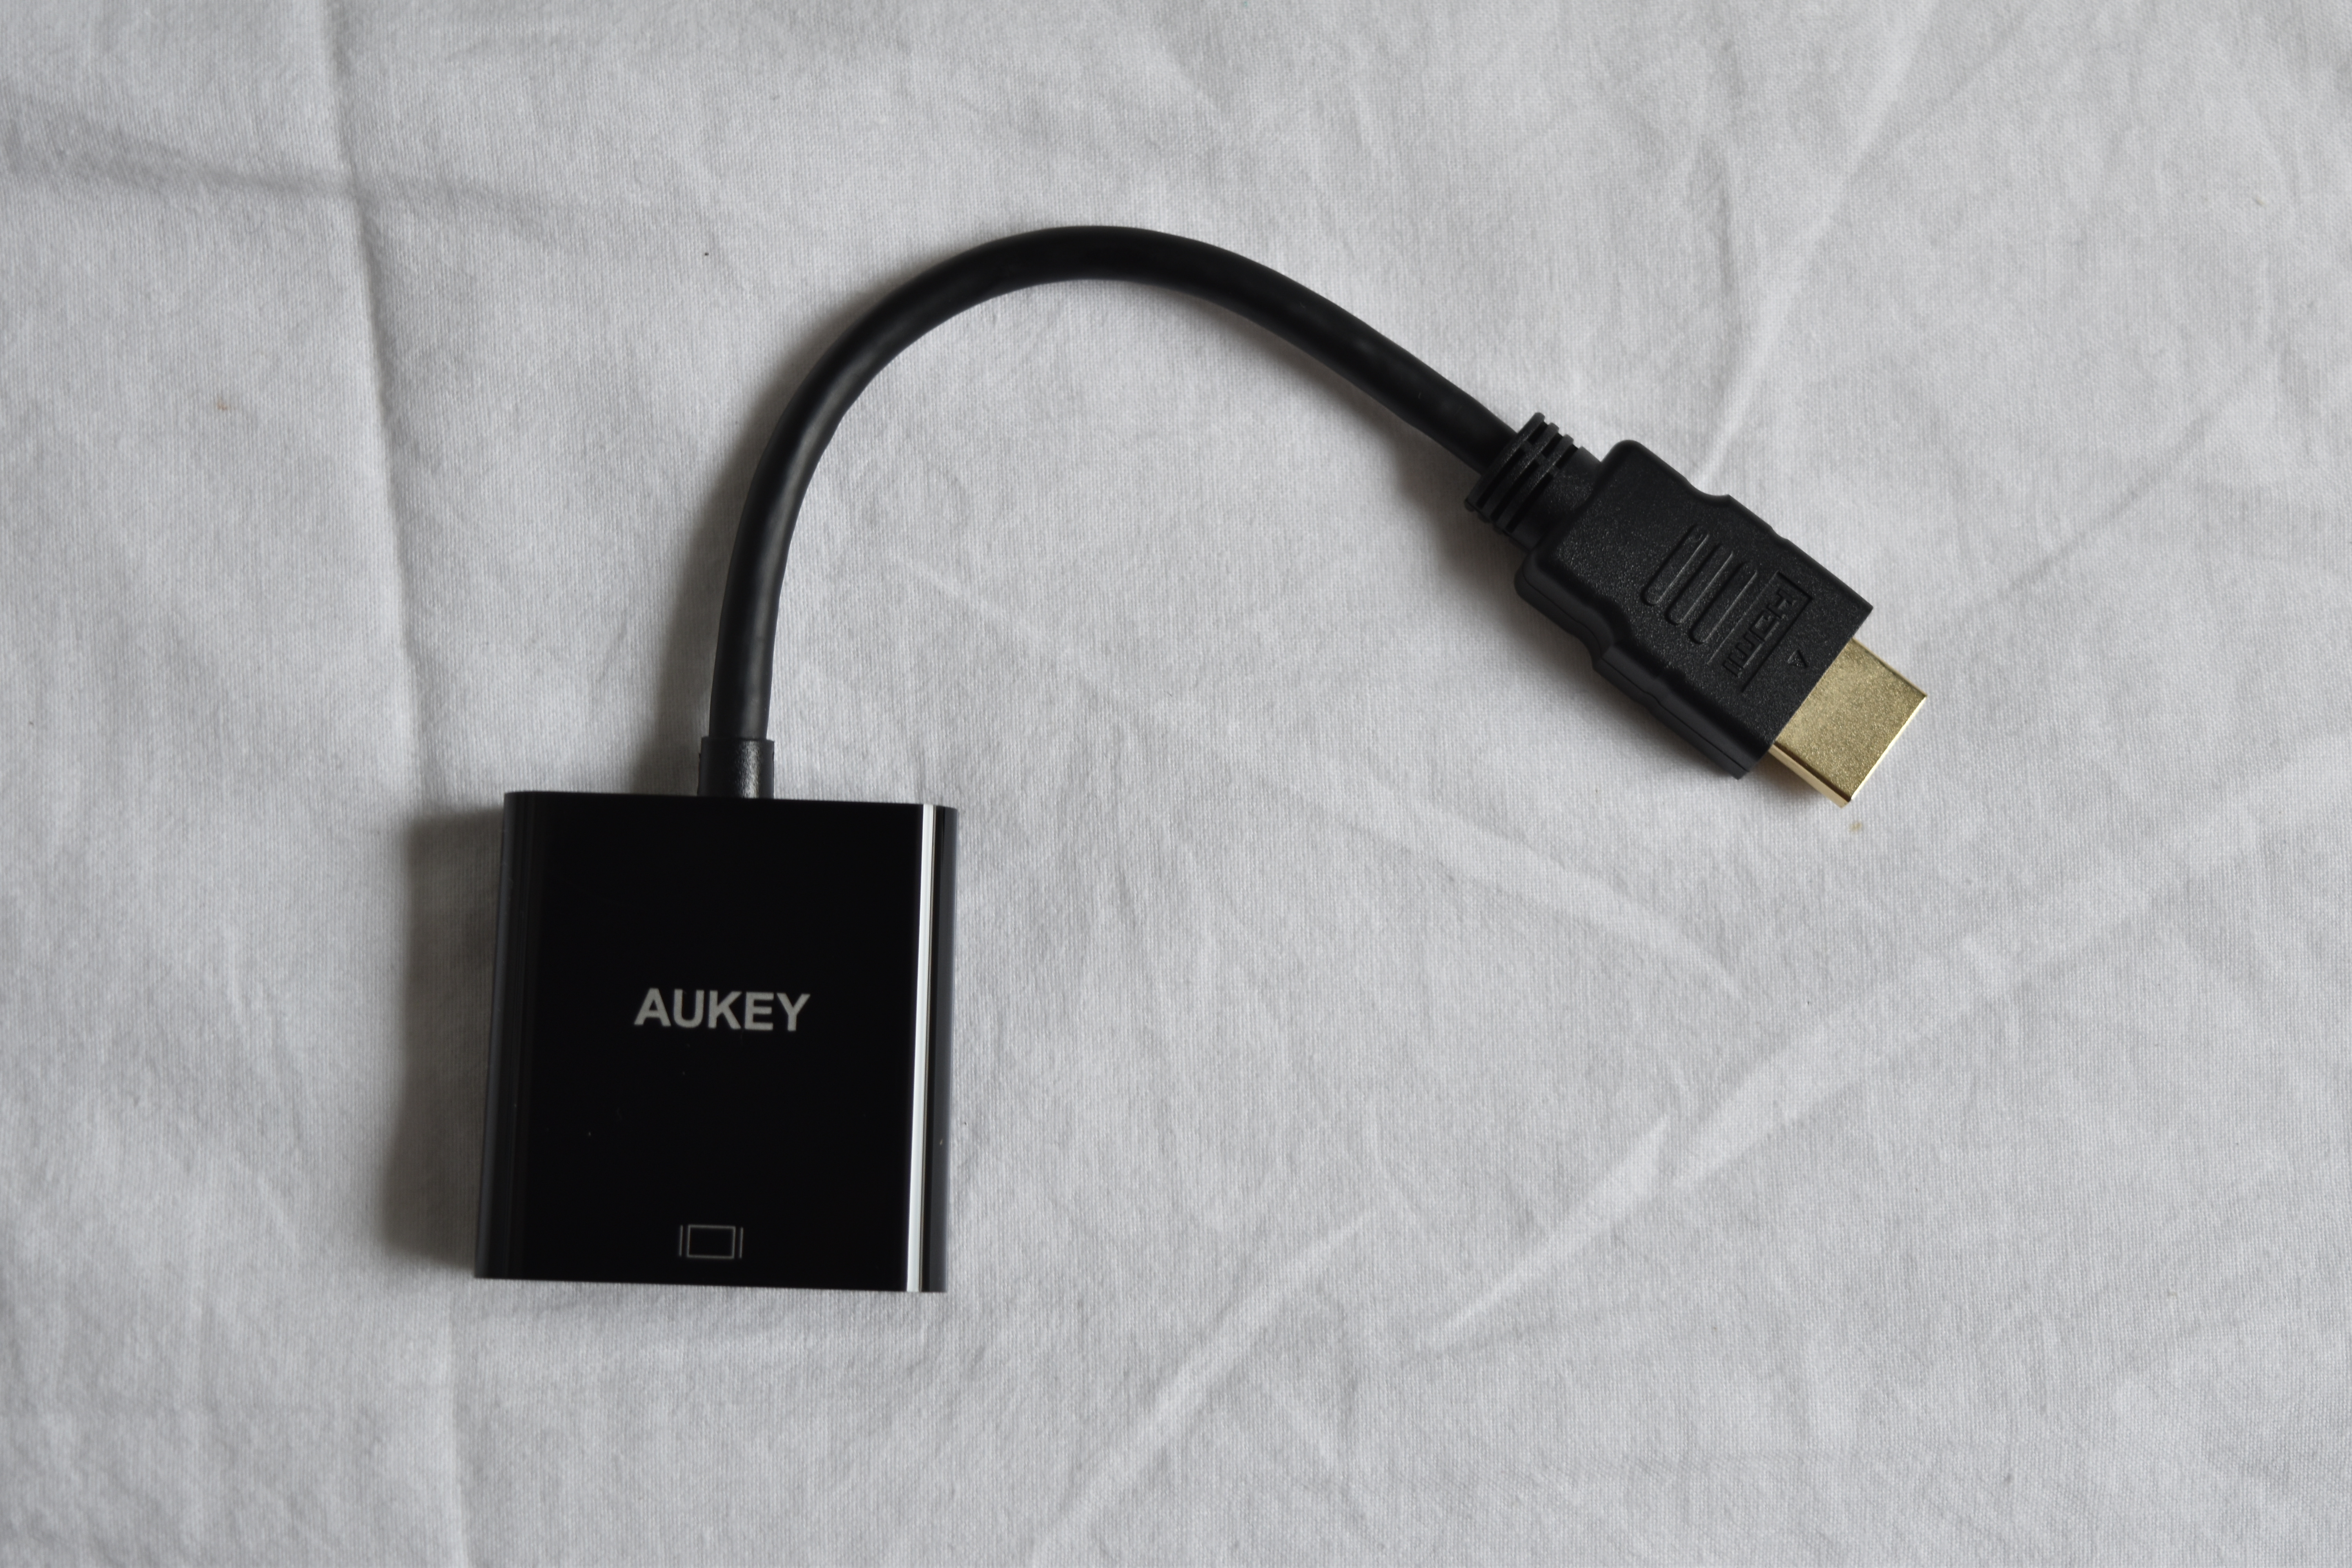 Adaptateur HDMI vers VGA Aukey : test d’un accessoire pas cher